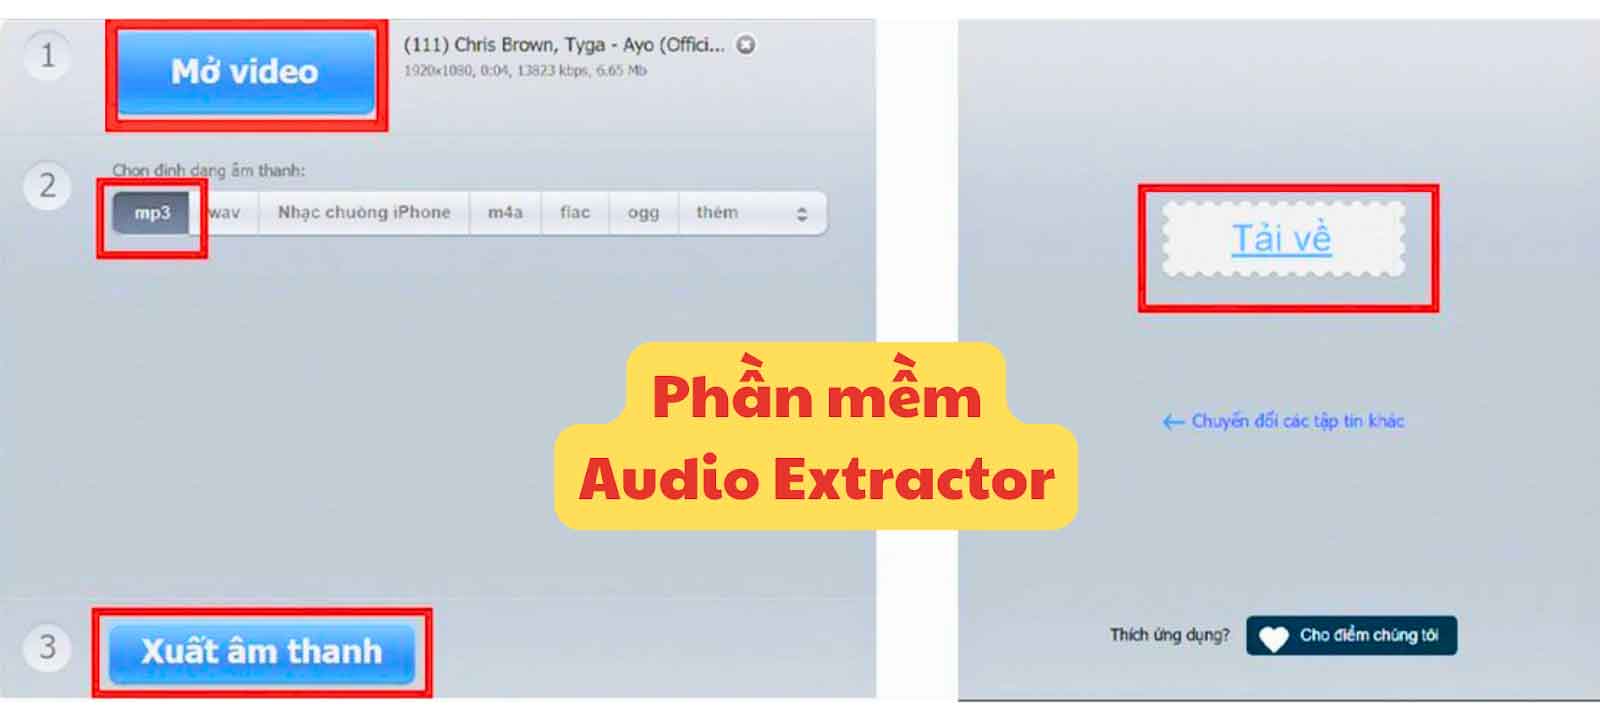 phần mềm Audio Extractor